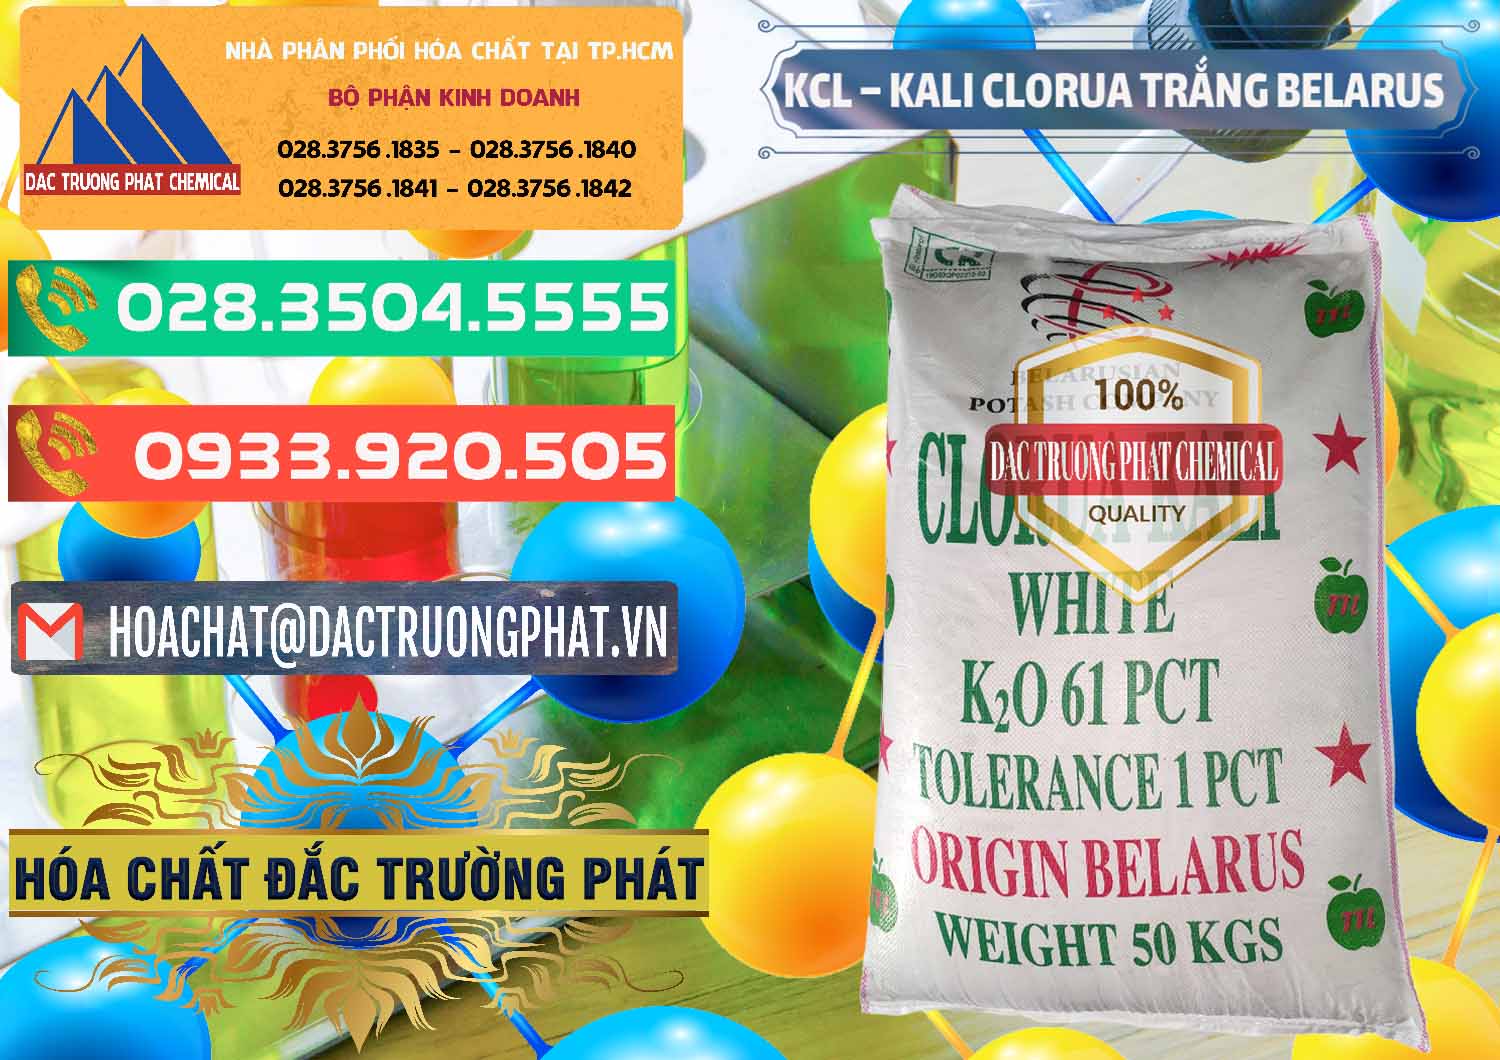 Phân phối và bán KCL – Kali Clorua Trắng Belarus - 0085 - Nơi chuyên nhập khẩu _ cung cấp hóa chất tại TP.HCM - congtyhoachat.com.vn